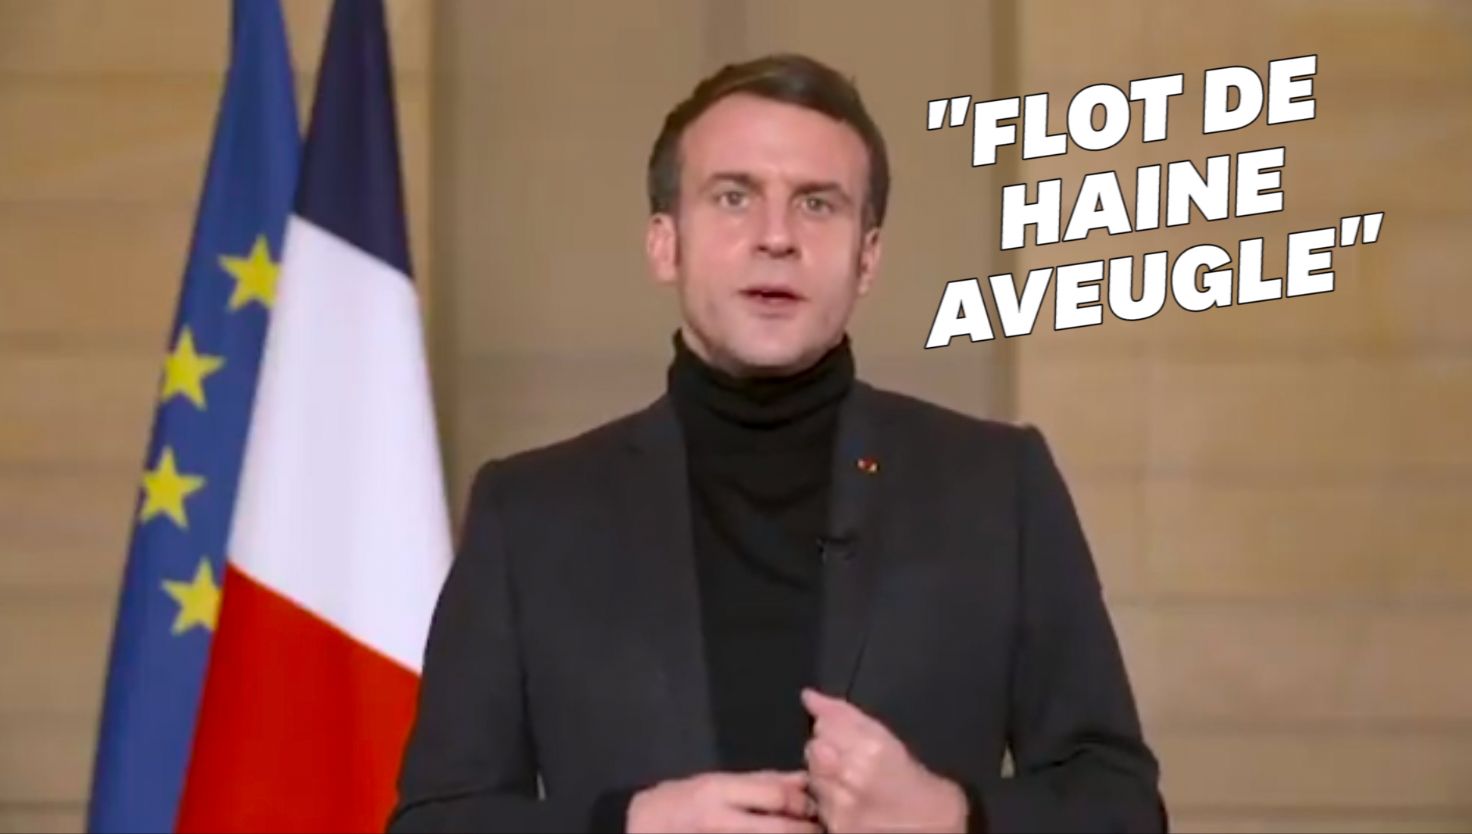 Nouvel An lunaire: Emmanuel Macron évoque la "haine aveugle" pendant le Covid